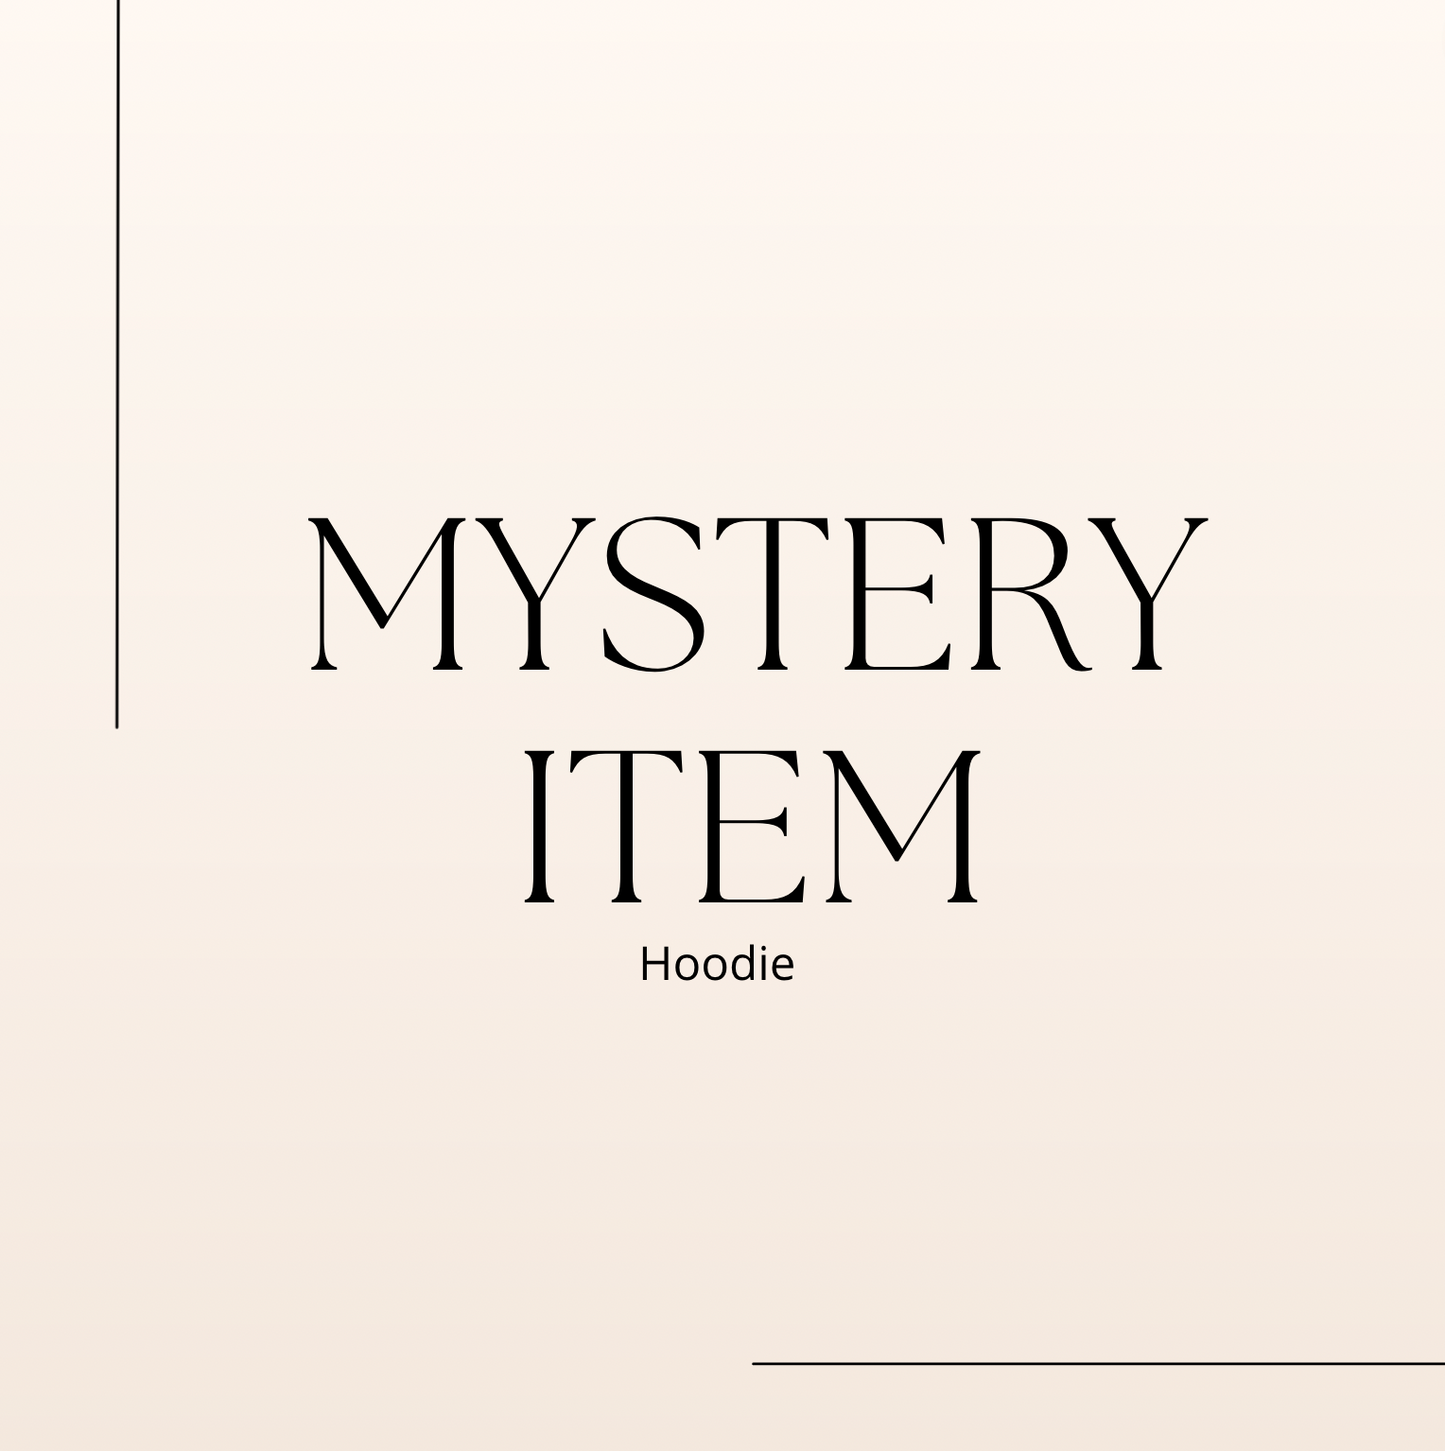 Mystery Item- Hoodie